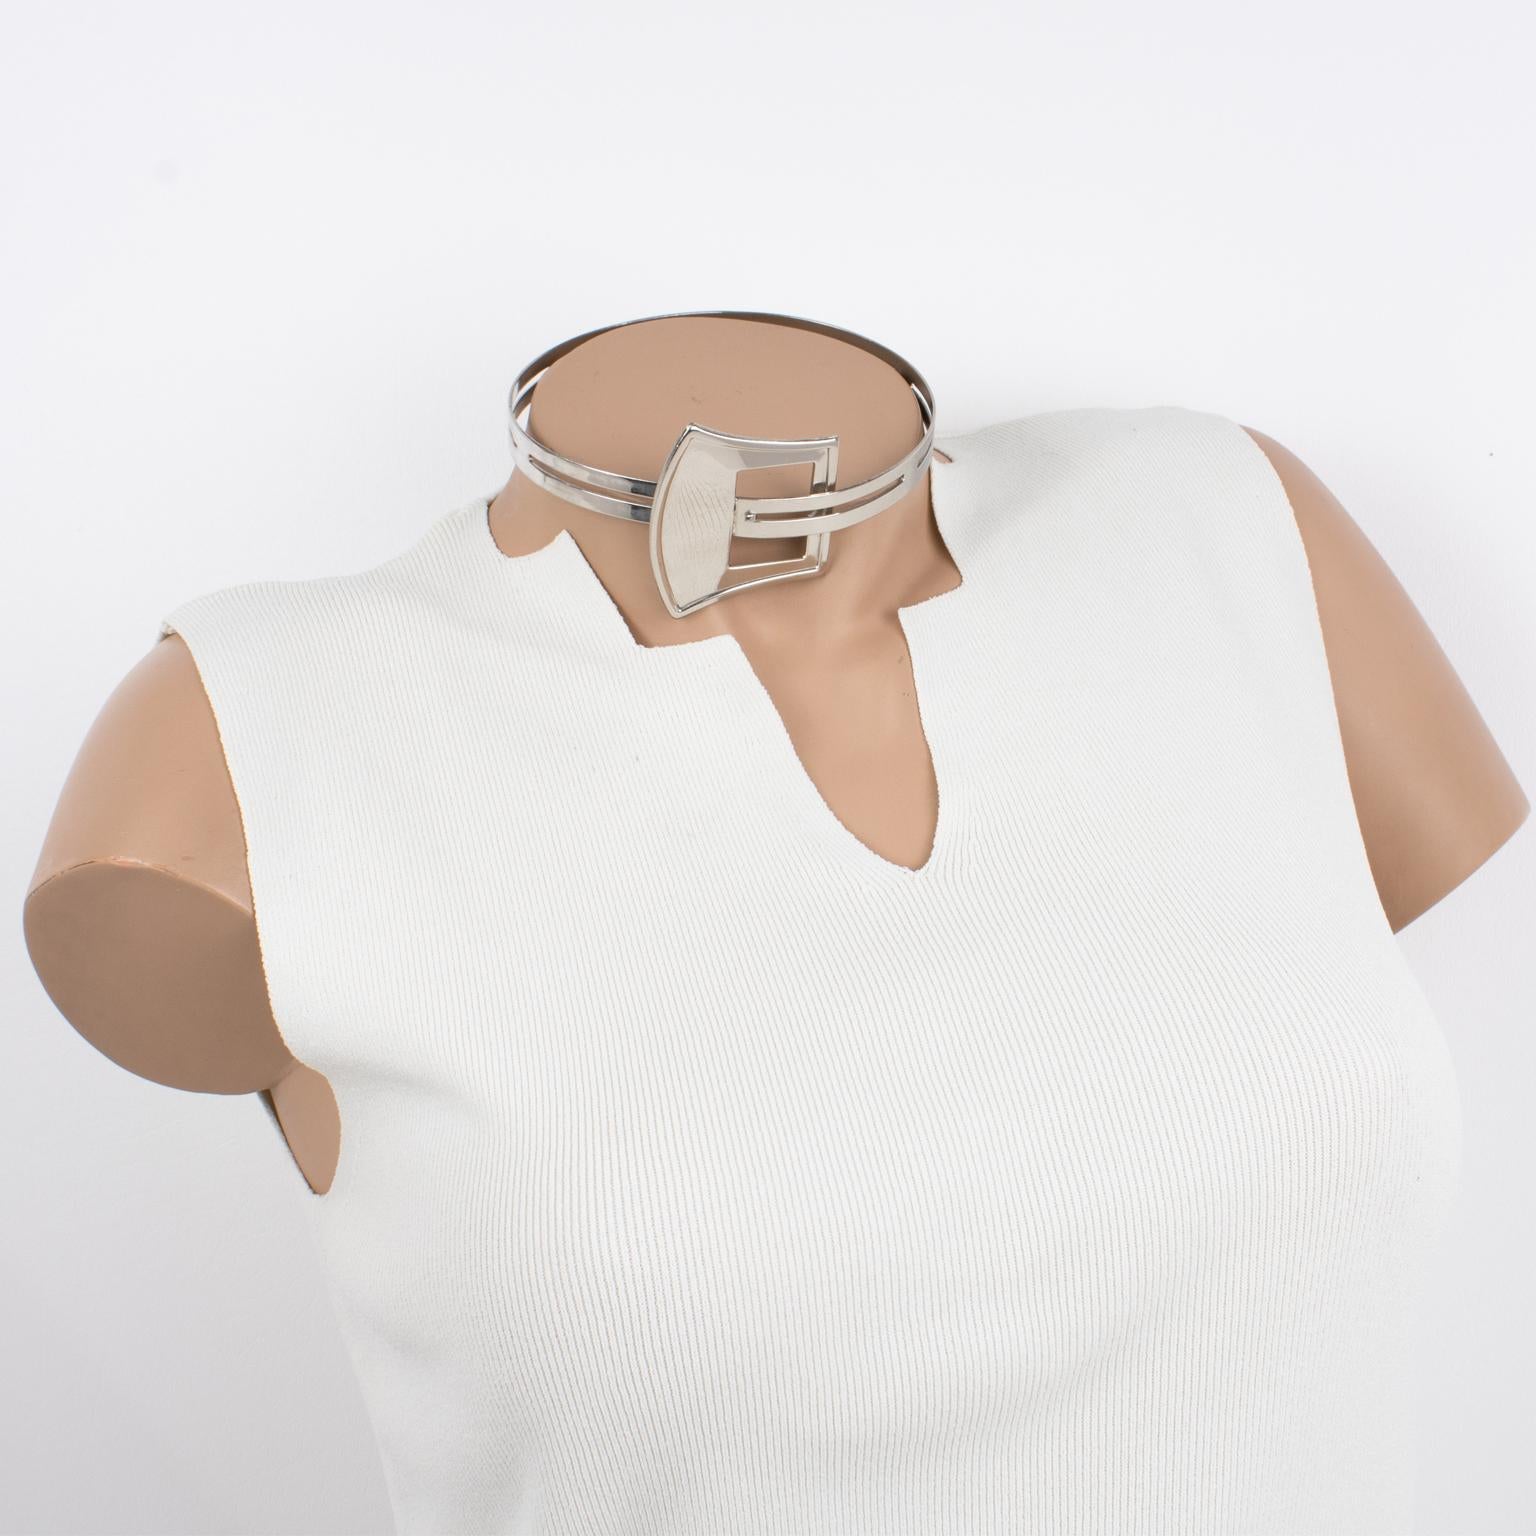 Ce superbe collier rigide moderniste présente un tour de cou articulé en métal argenté avec du métal entièrement texturé et transparent agrémenté d'un motif de boucle de ceinture. Le système d'attache est caché dans le design de la boucle de